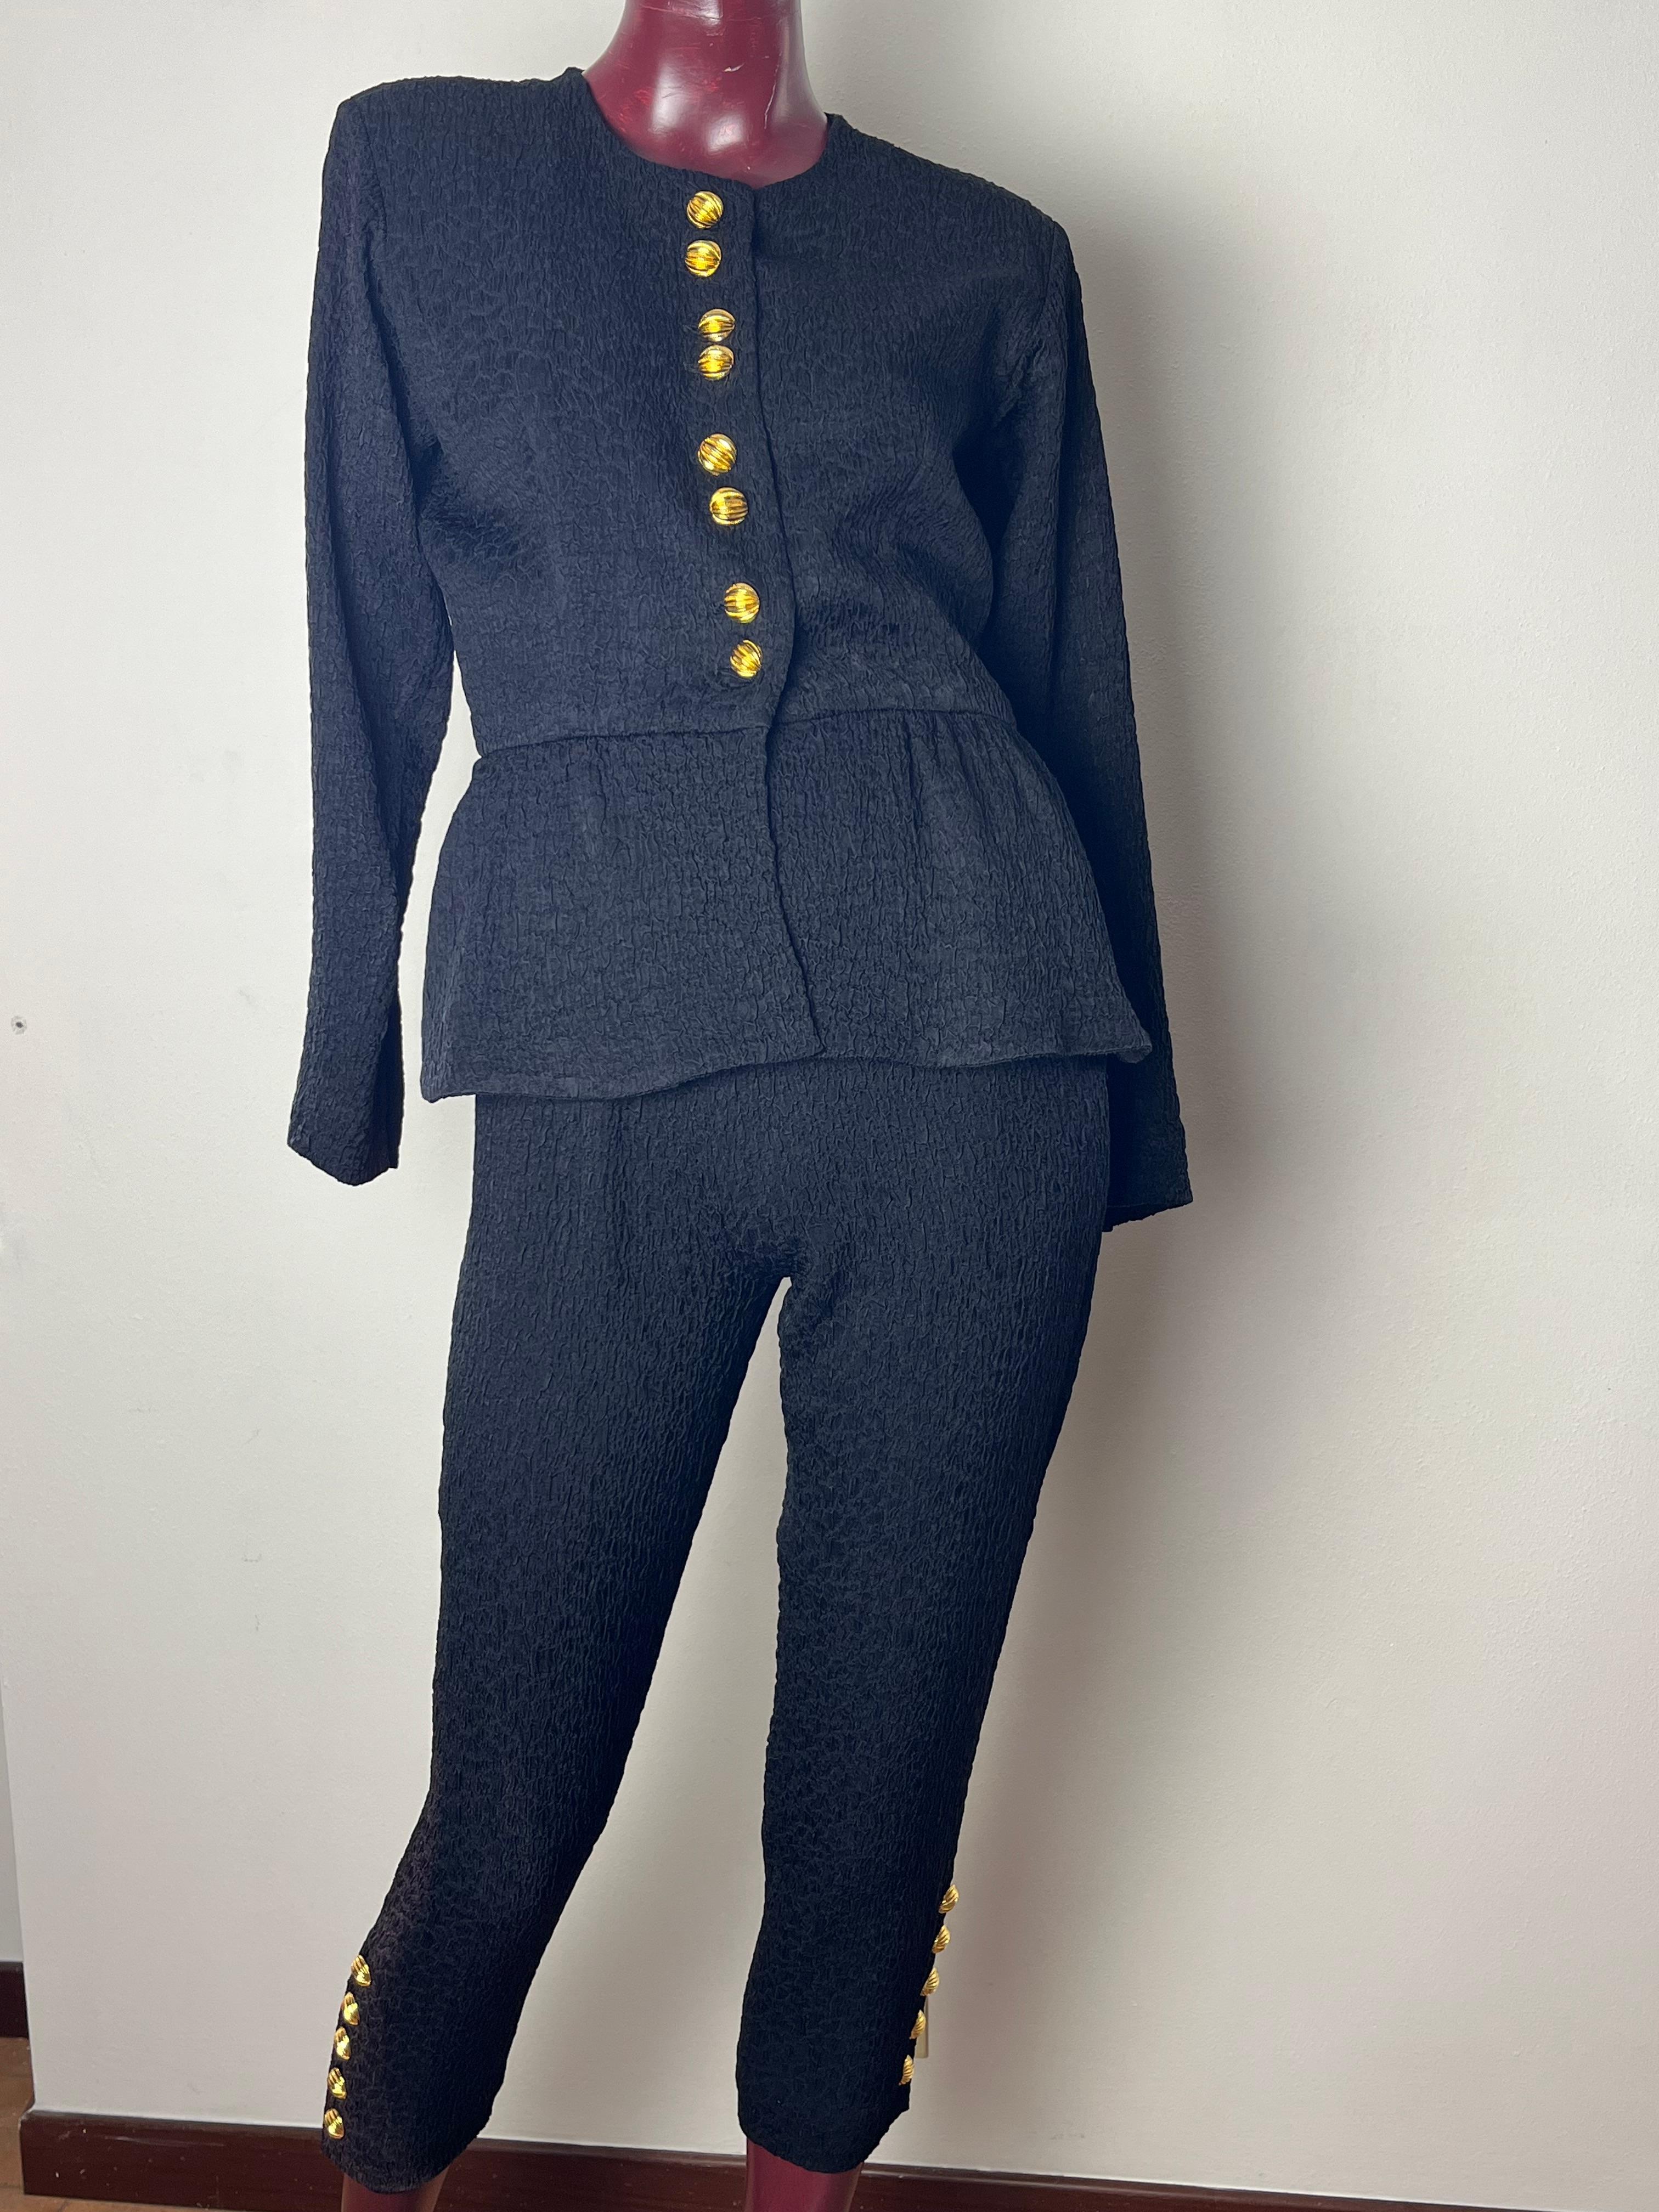 Un élégant costume vintage  tissu noir froissé YSL rive gauche des années 80

la veste se ferme à l'aide de 8 boutons ornés de pierres précieuses et de 5 boutons par manche

pantalon mi-mollet ajusté  avec des boutons à la fin  5 boutons par côté,